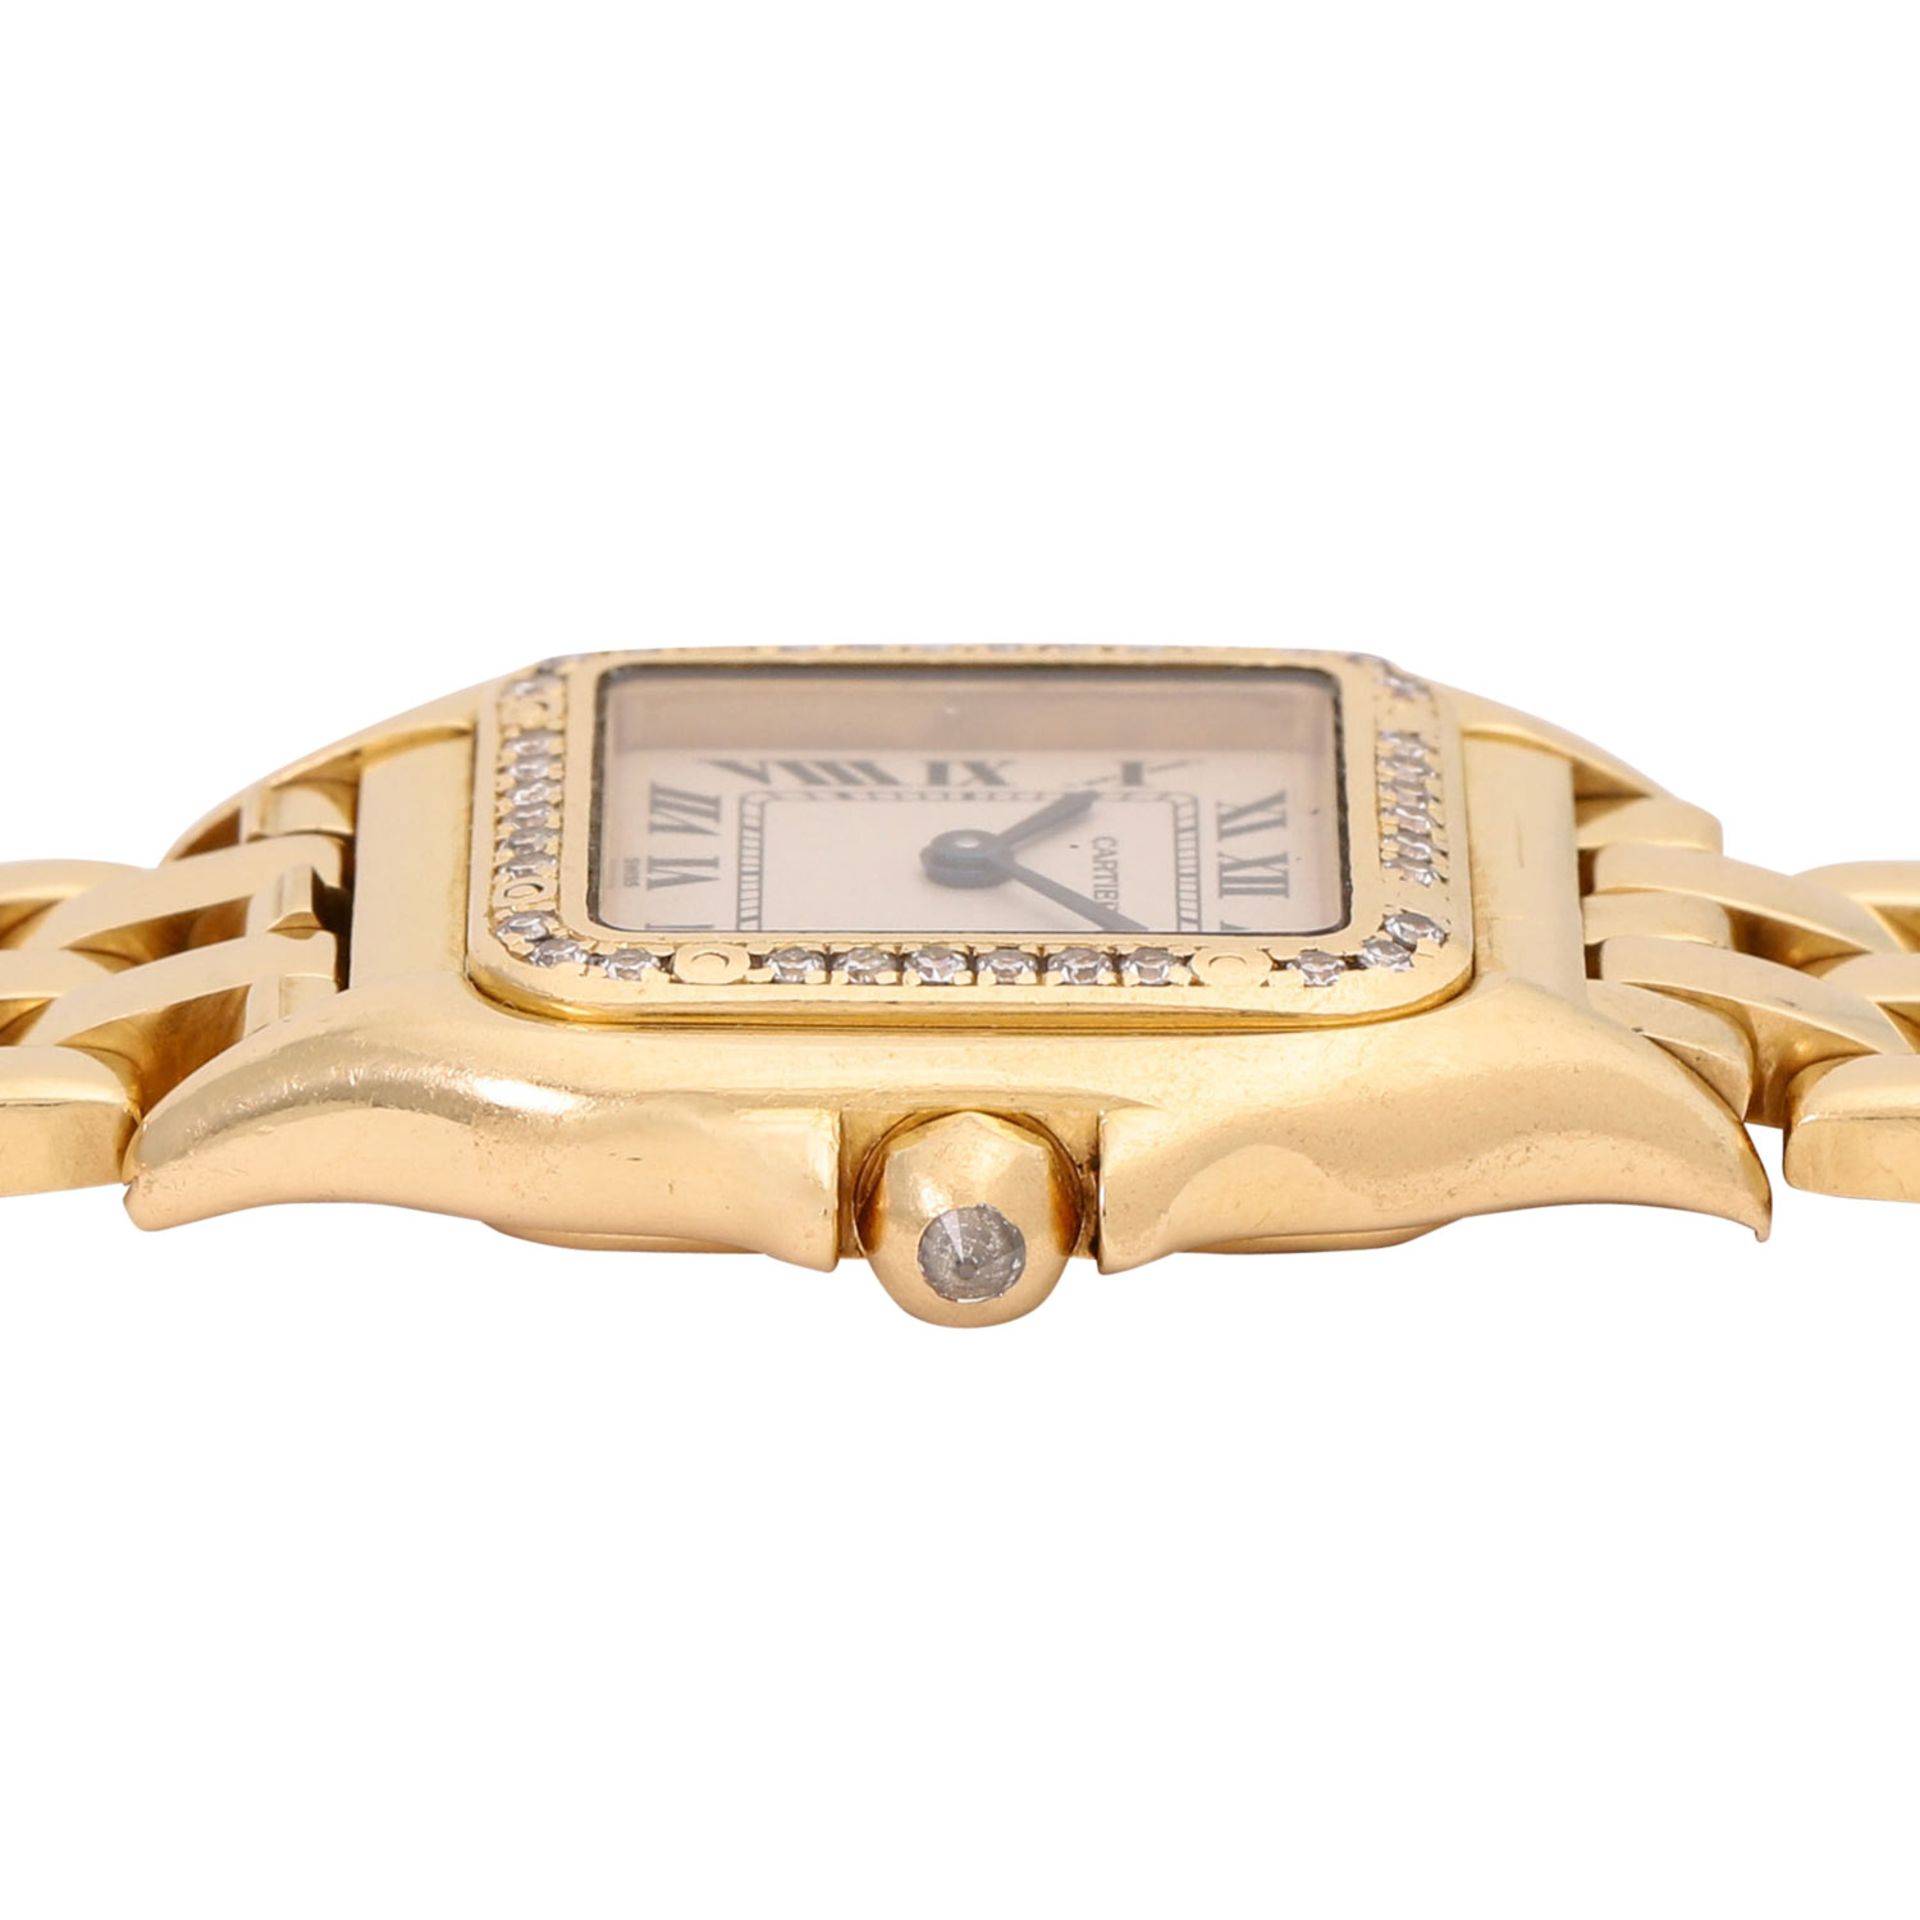 CARTIER Neo-Vintage Panthere SM "Diamond" Damen Armbanduhr, Ref. 1280 2. Ca. 1990er Jahre. - Bild 3 aus 7